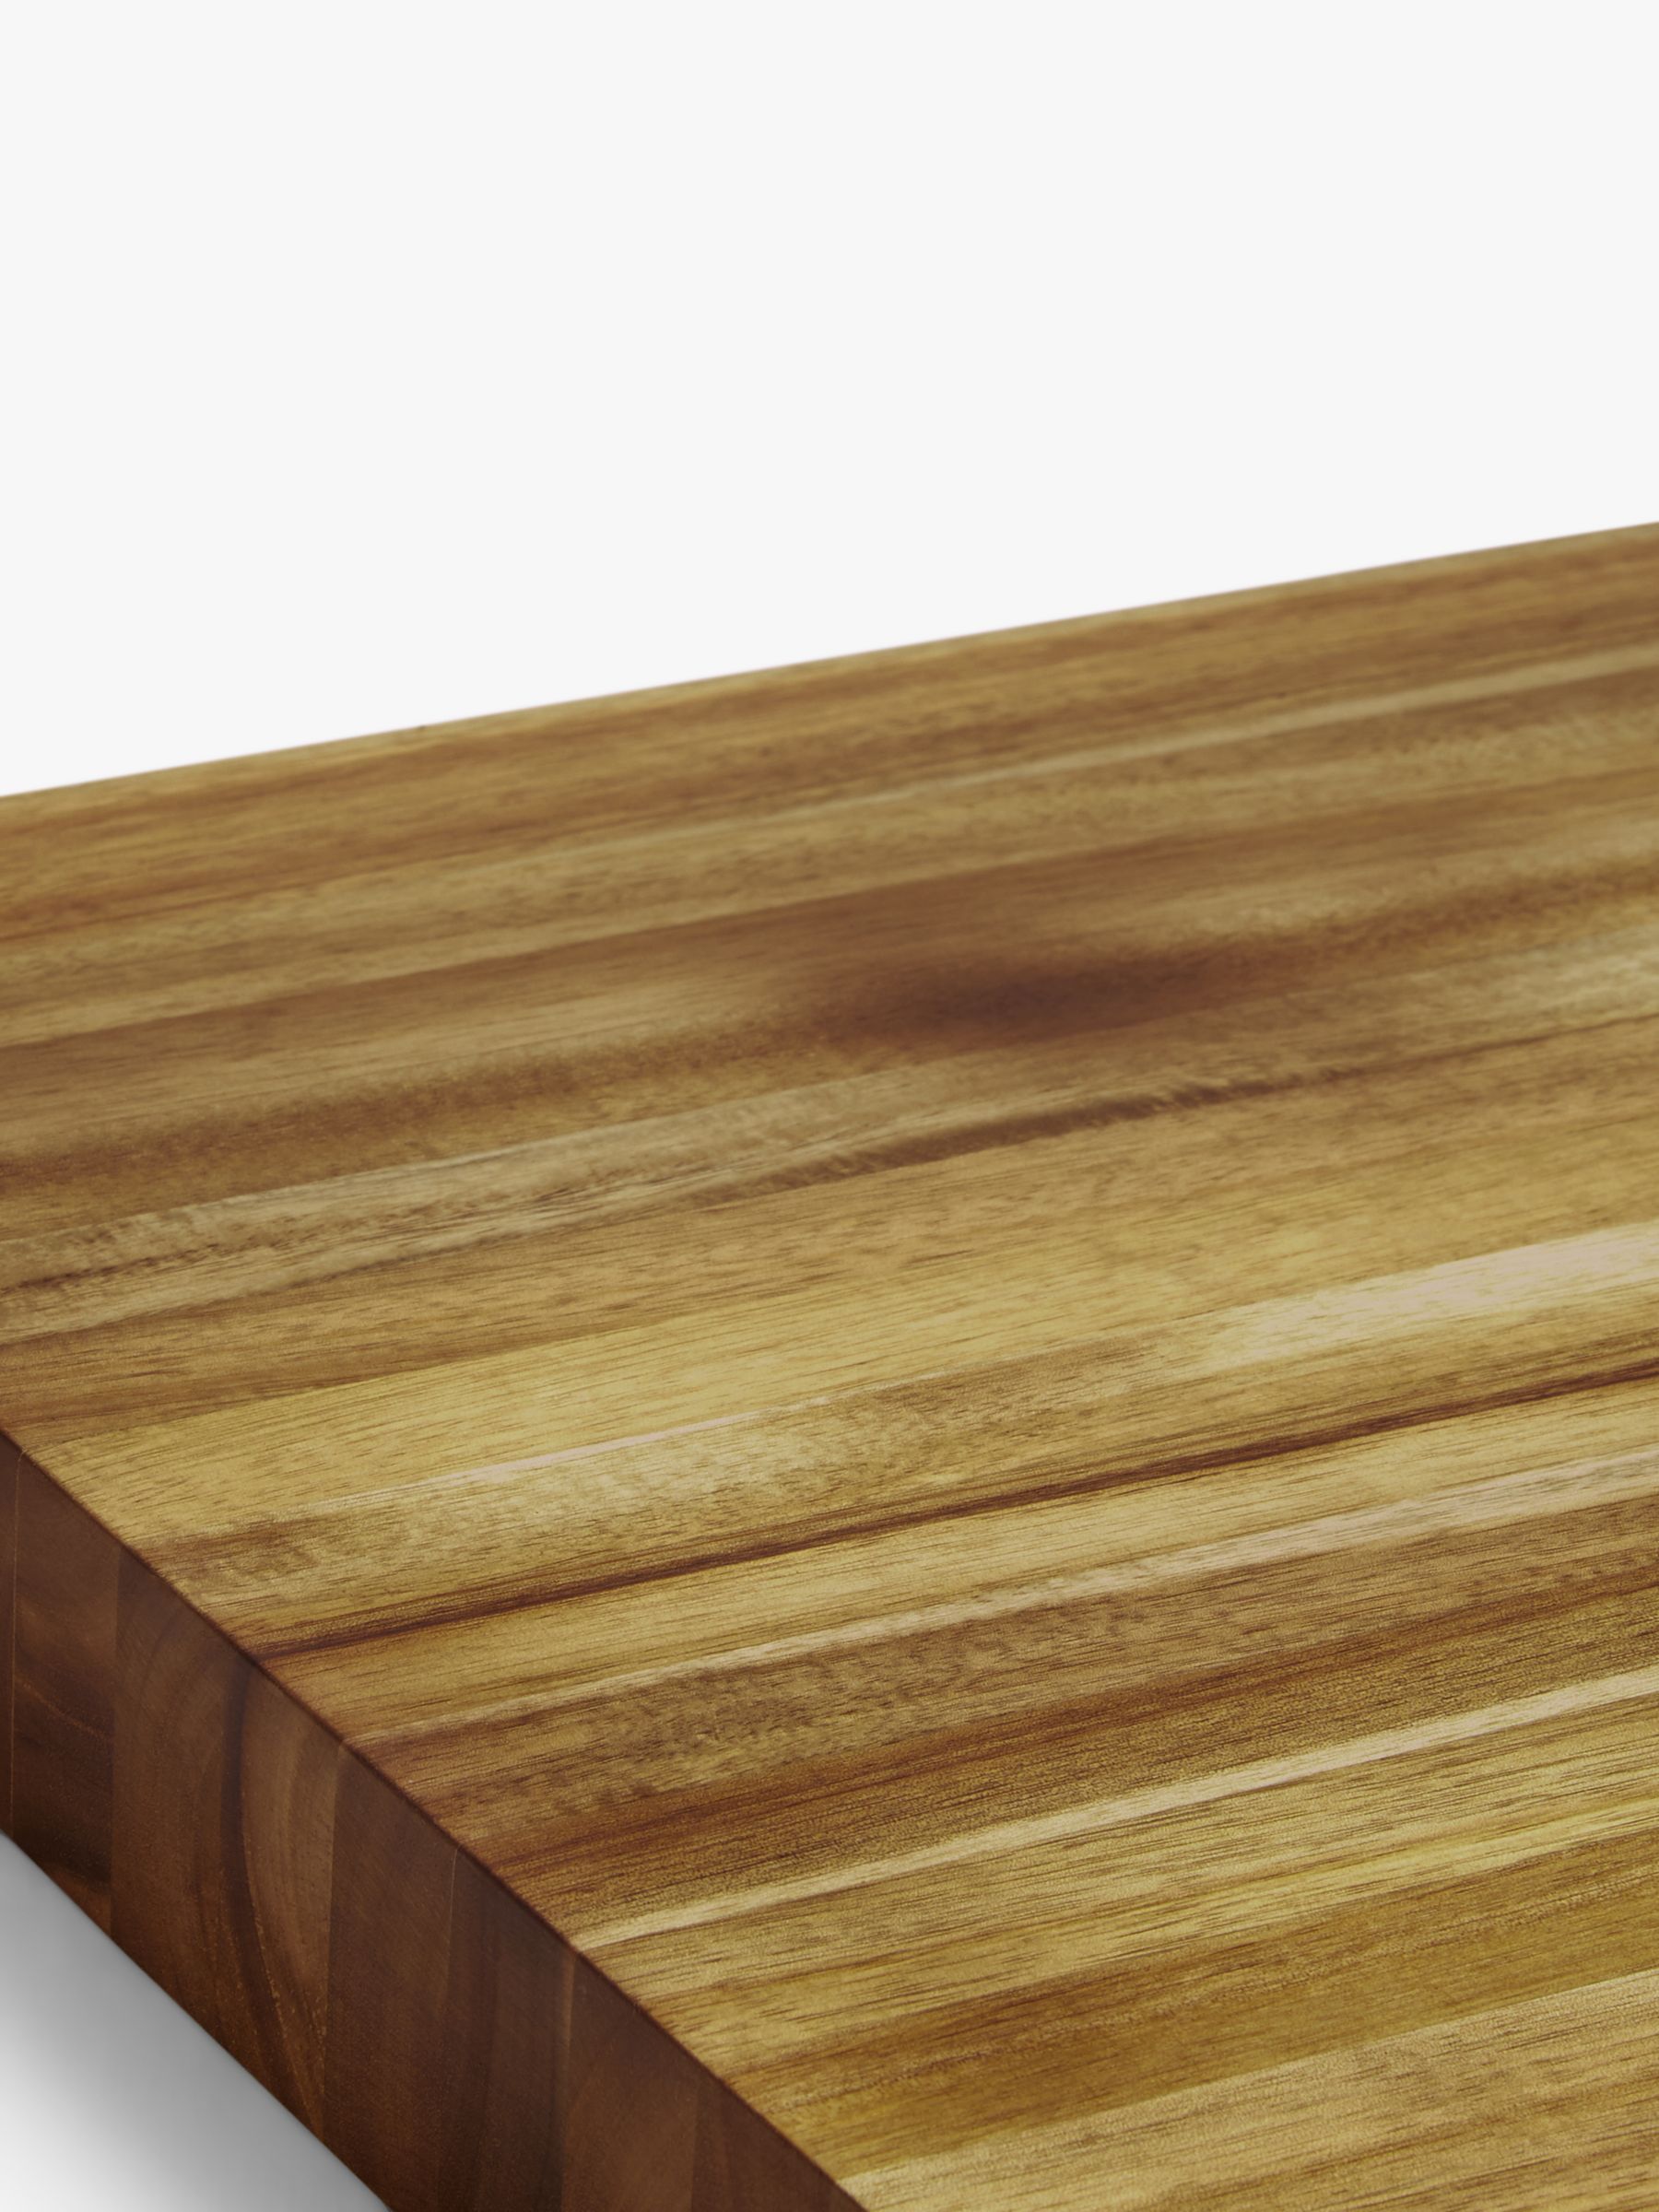 natural wood chopping board